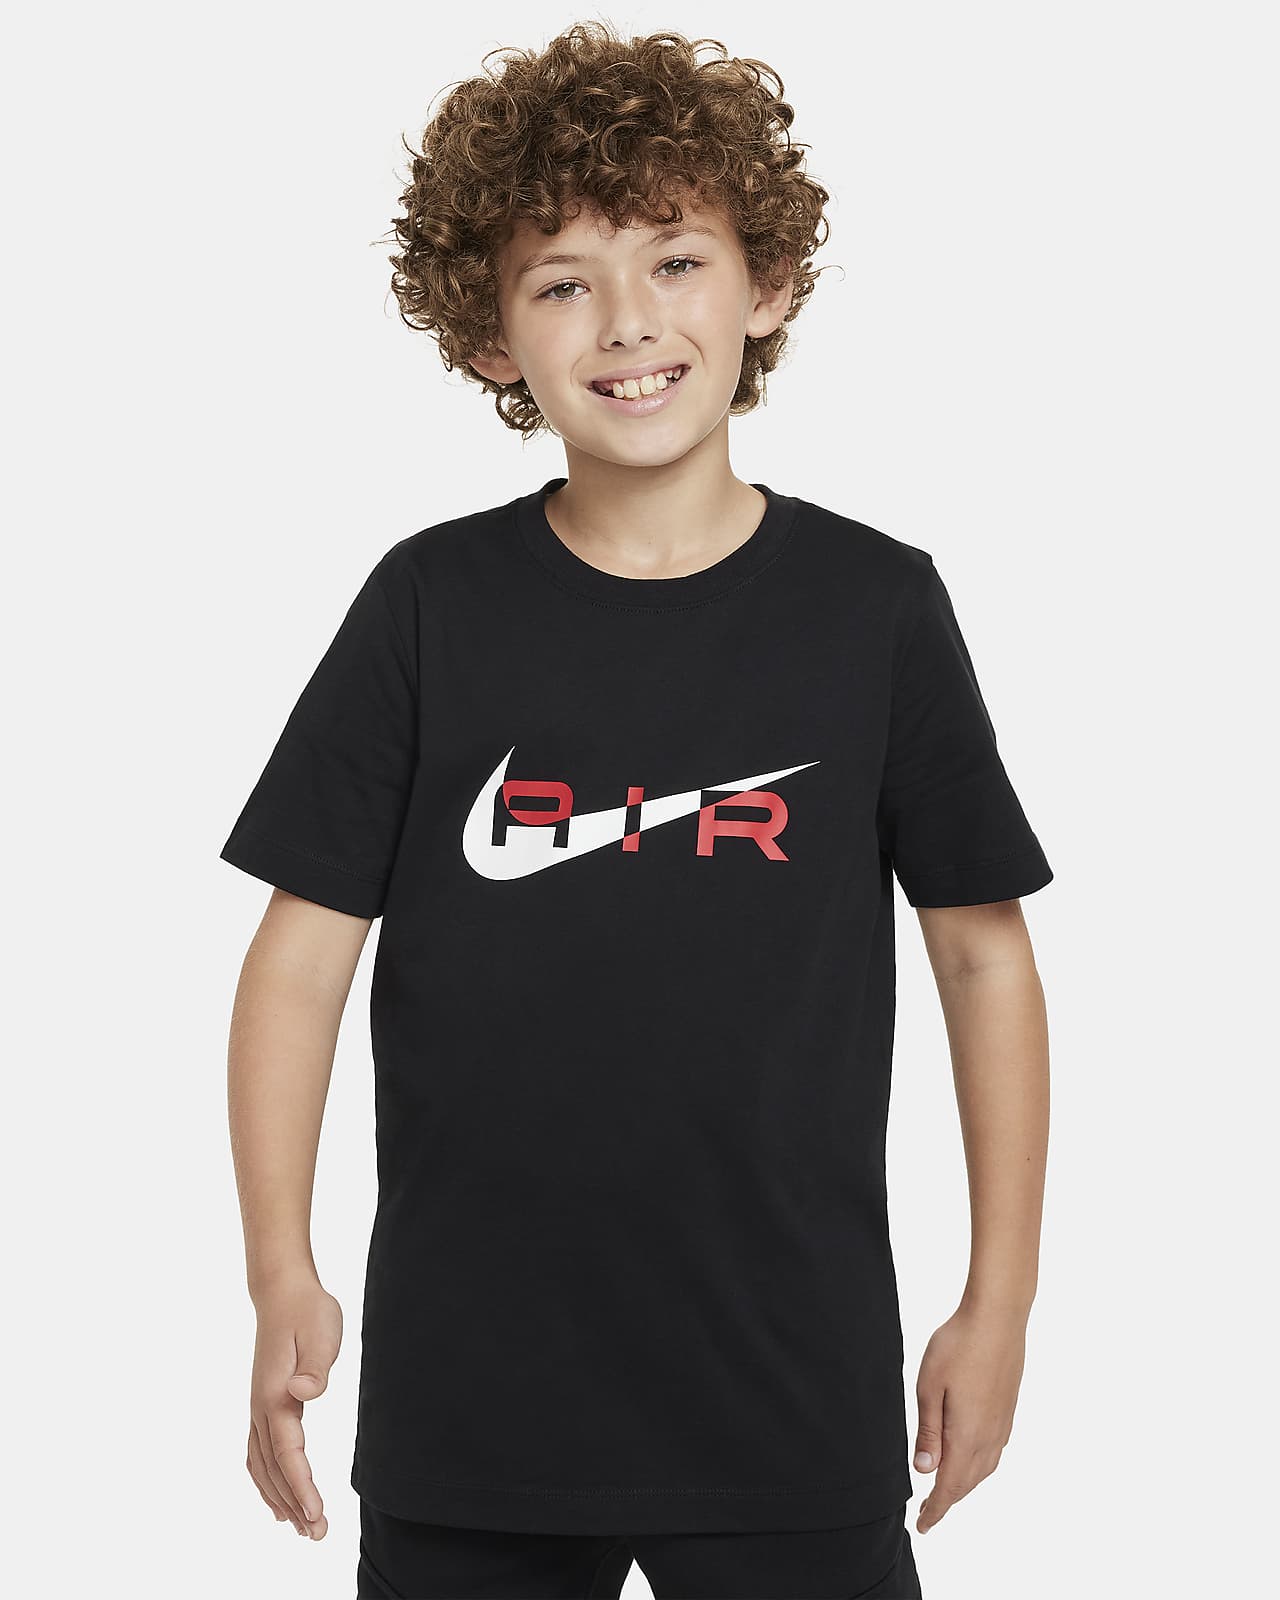 Nike Air Older Kids' (Boys') T-Shirt